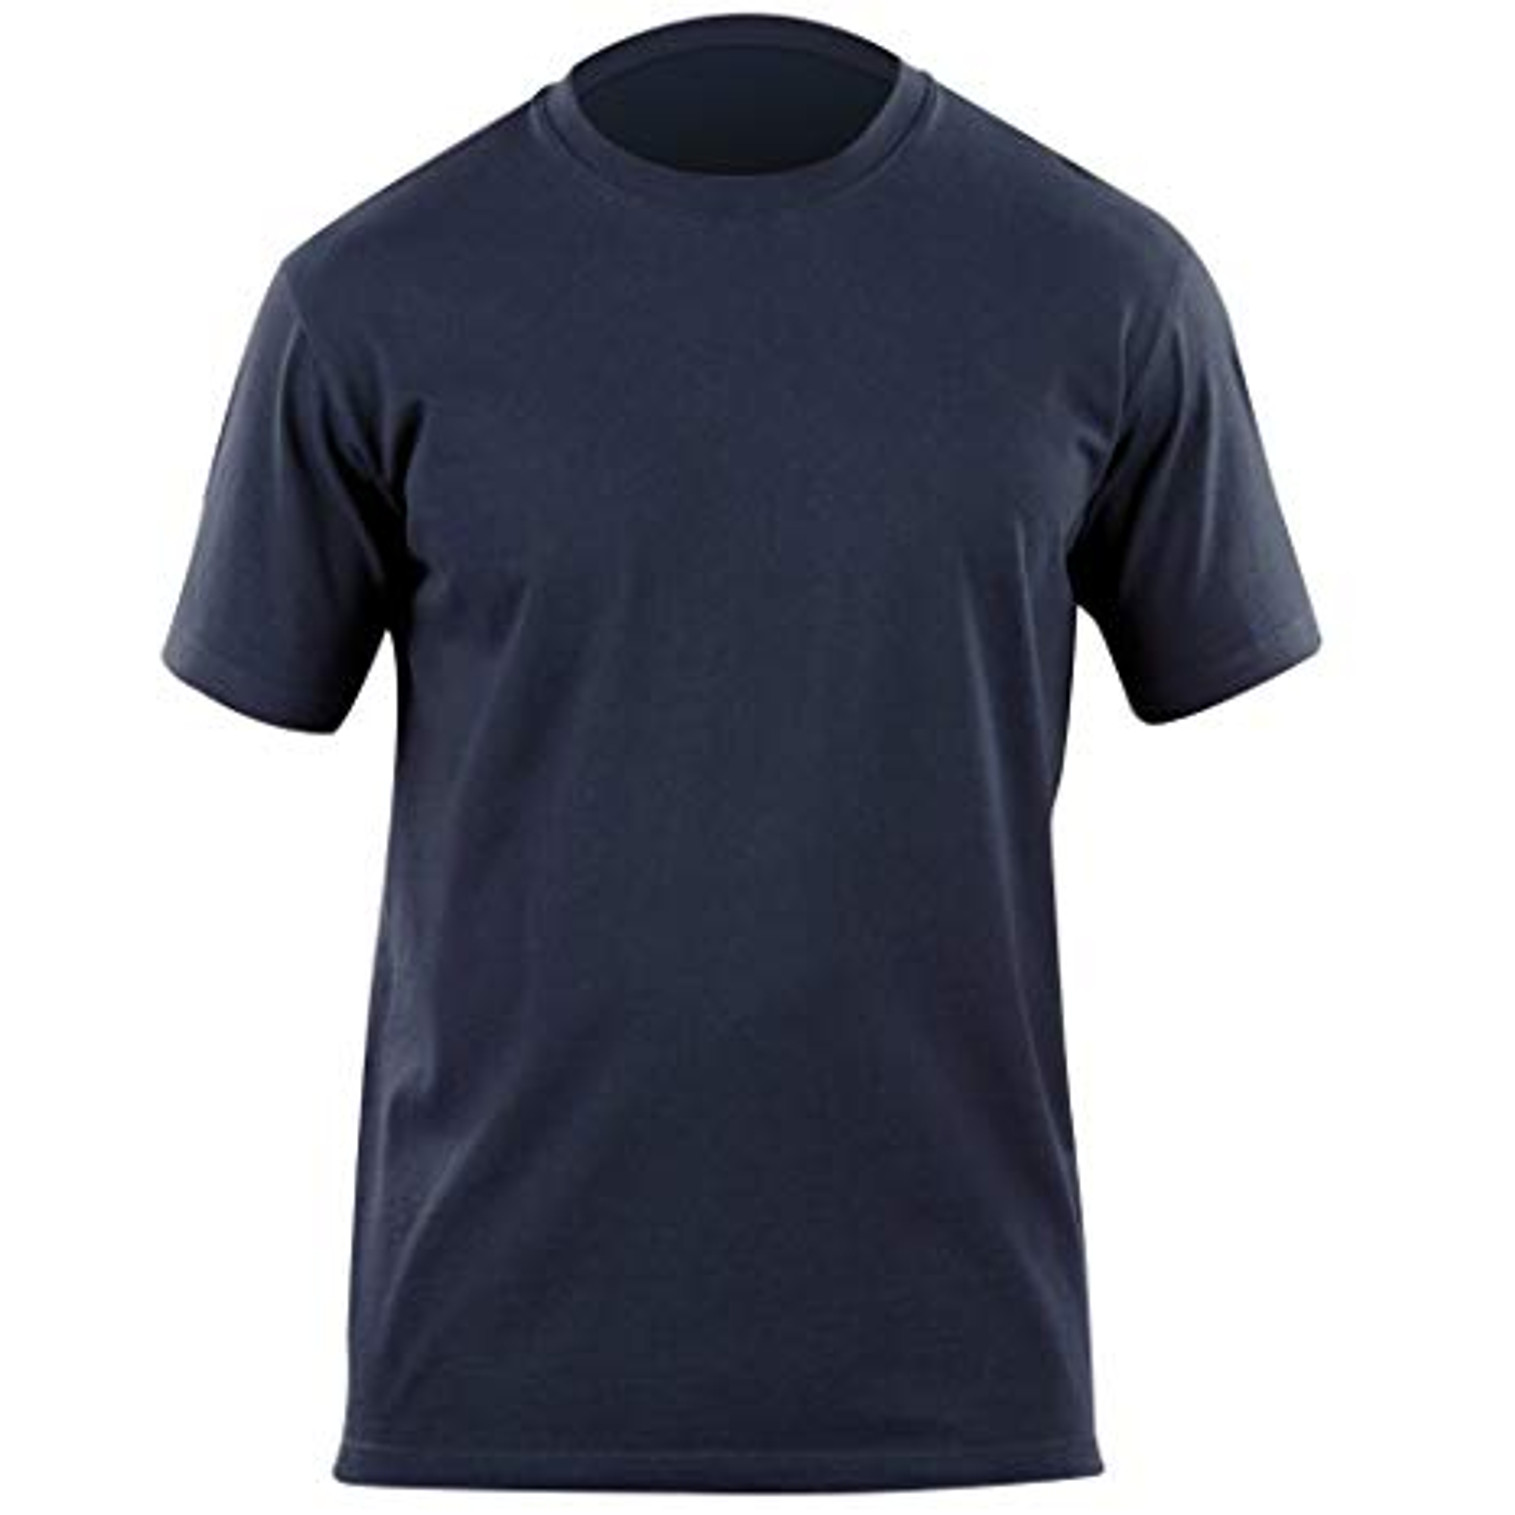 Professional Short Sleeve T-shirt - KR5-713097203XL